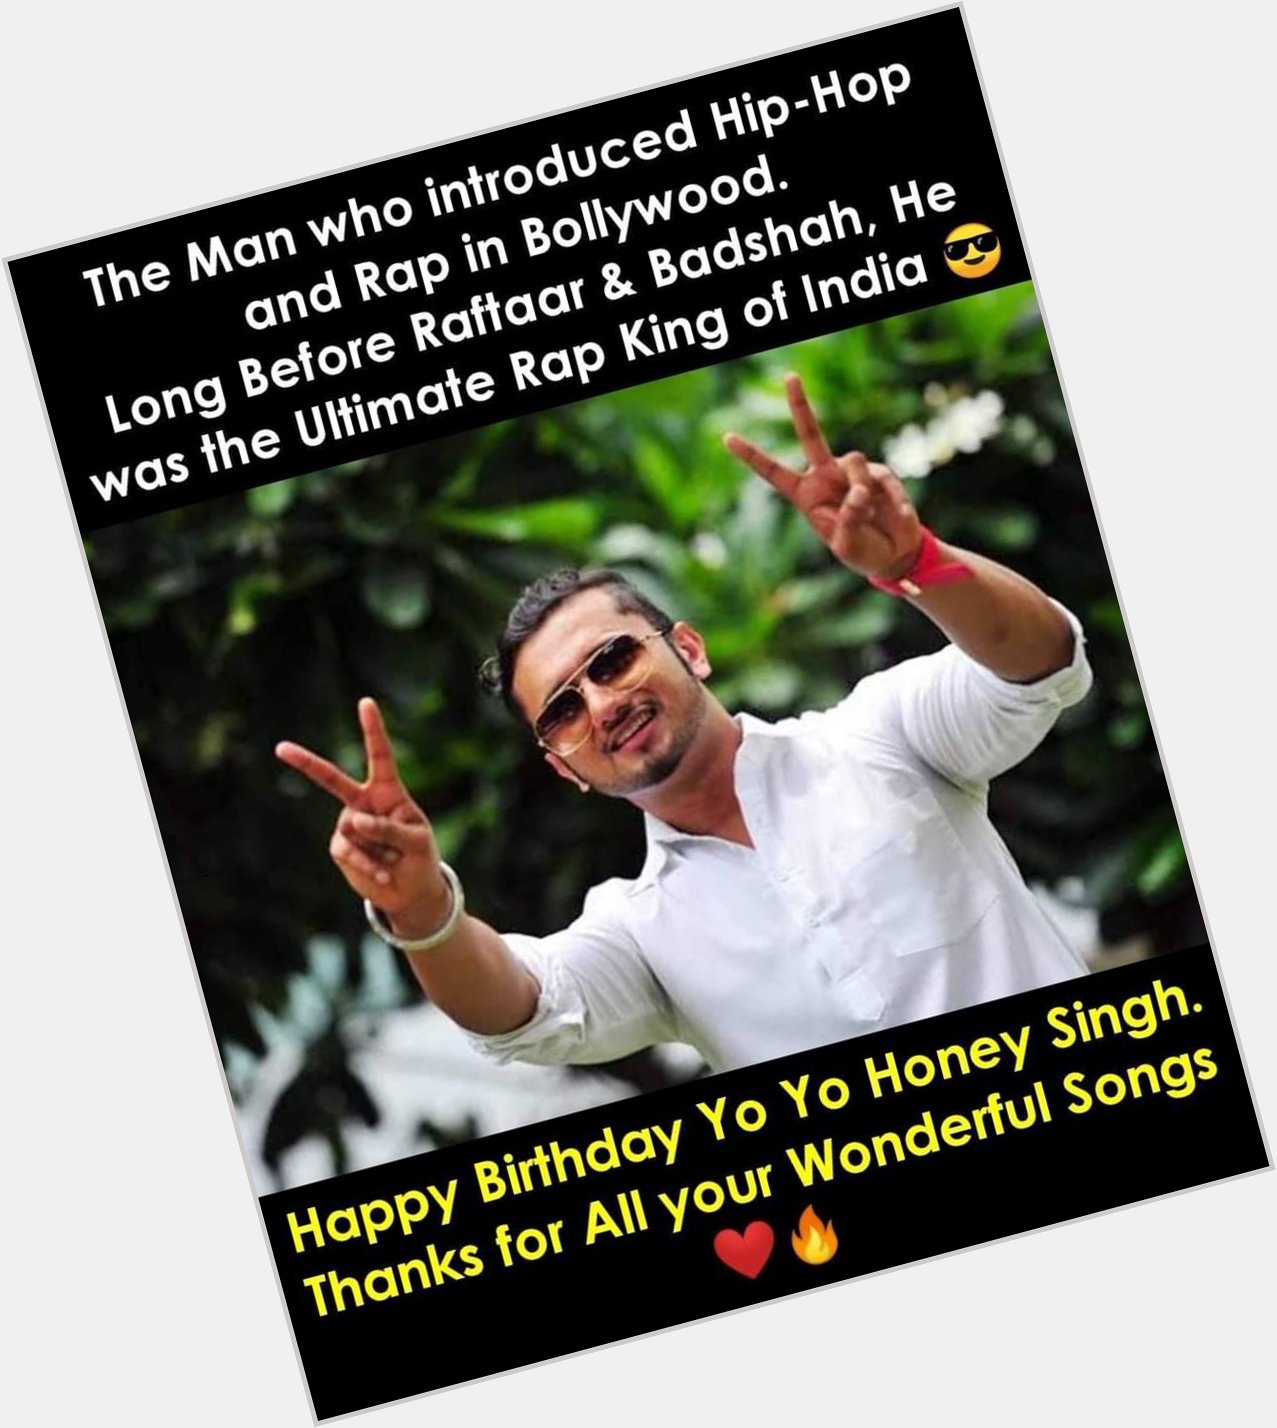  Happy Birthday Yo Yo Honey Singh  